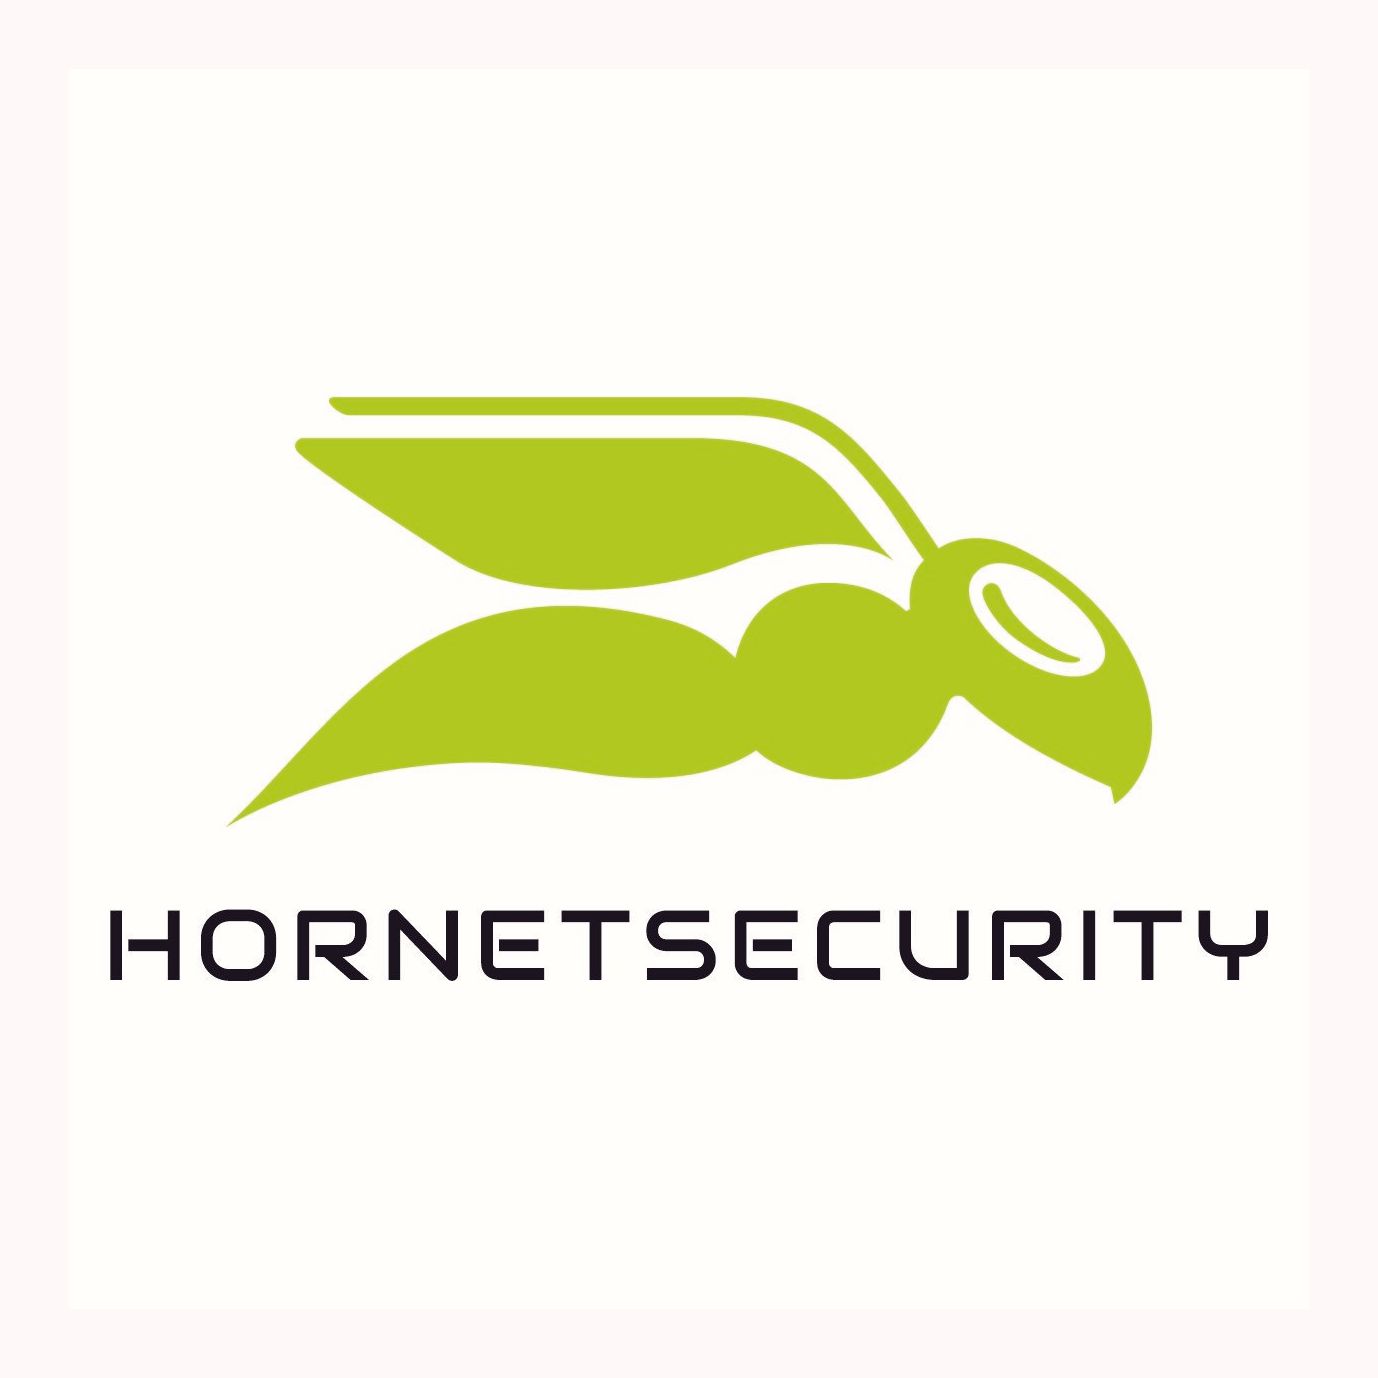 Hornetsecurity Jobs